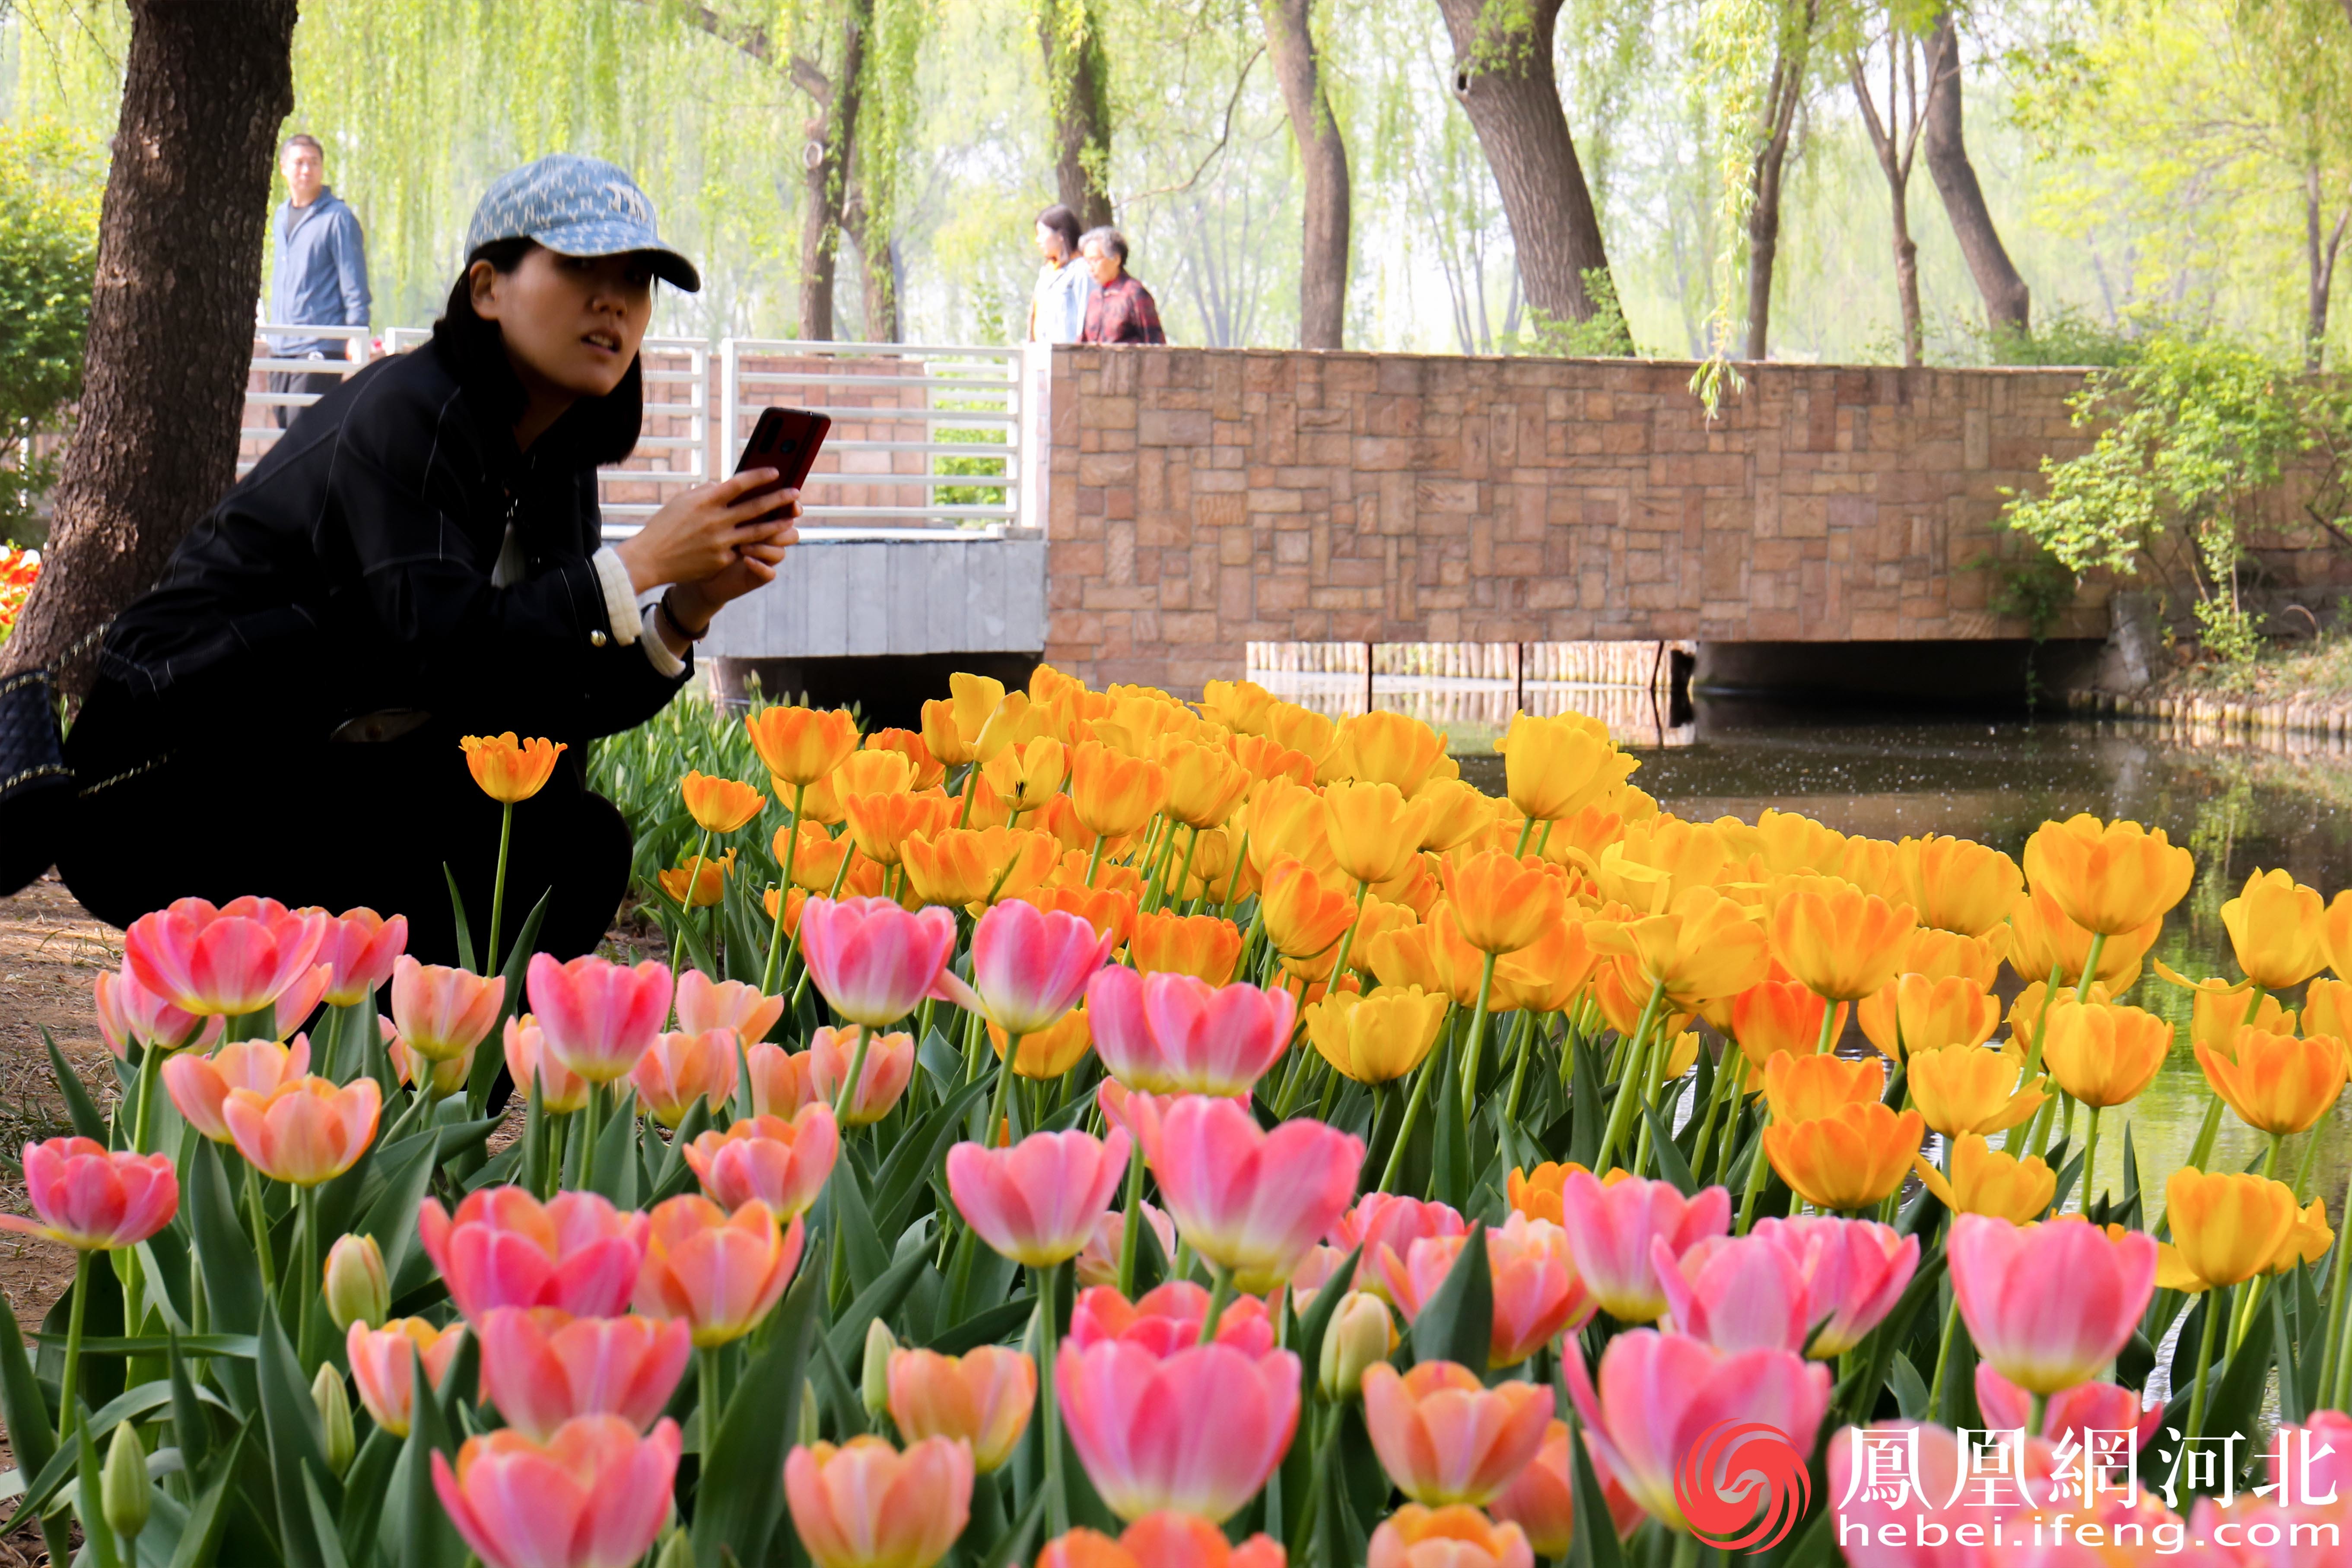 市民拿出手机蹲在花海边缘，用镜头捕捉着郁金香此时的美丽。